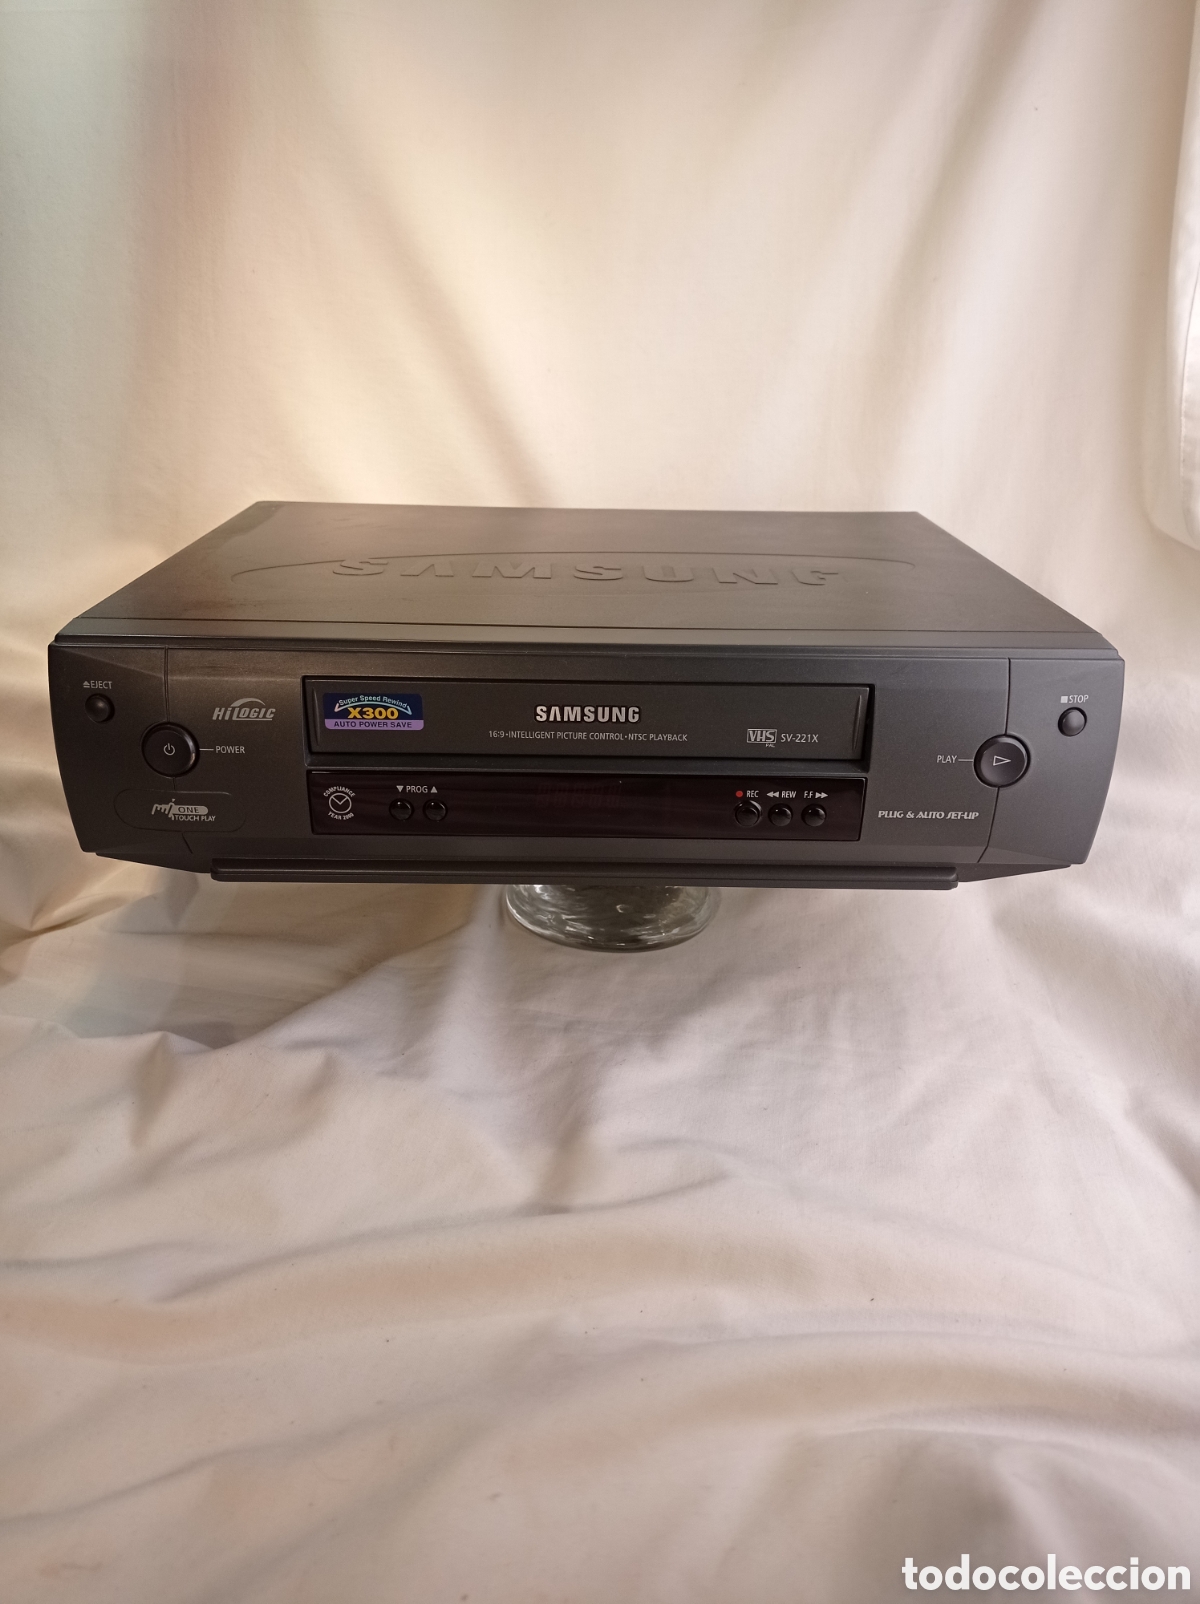 reproductor vídeo vhs samsung sv-221x. funciona - Buy VHS movies on  todocoleccion